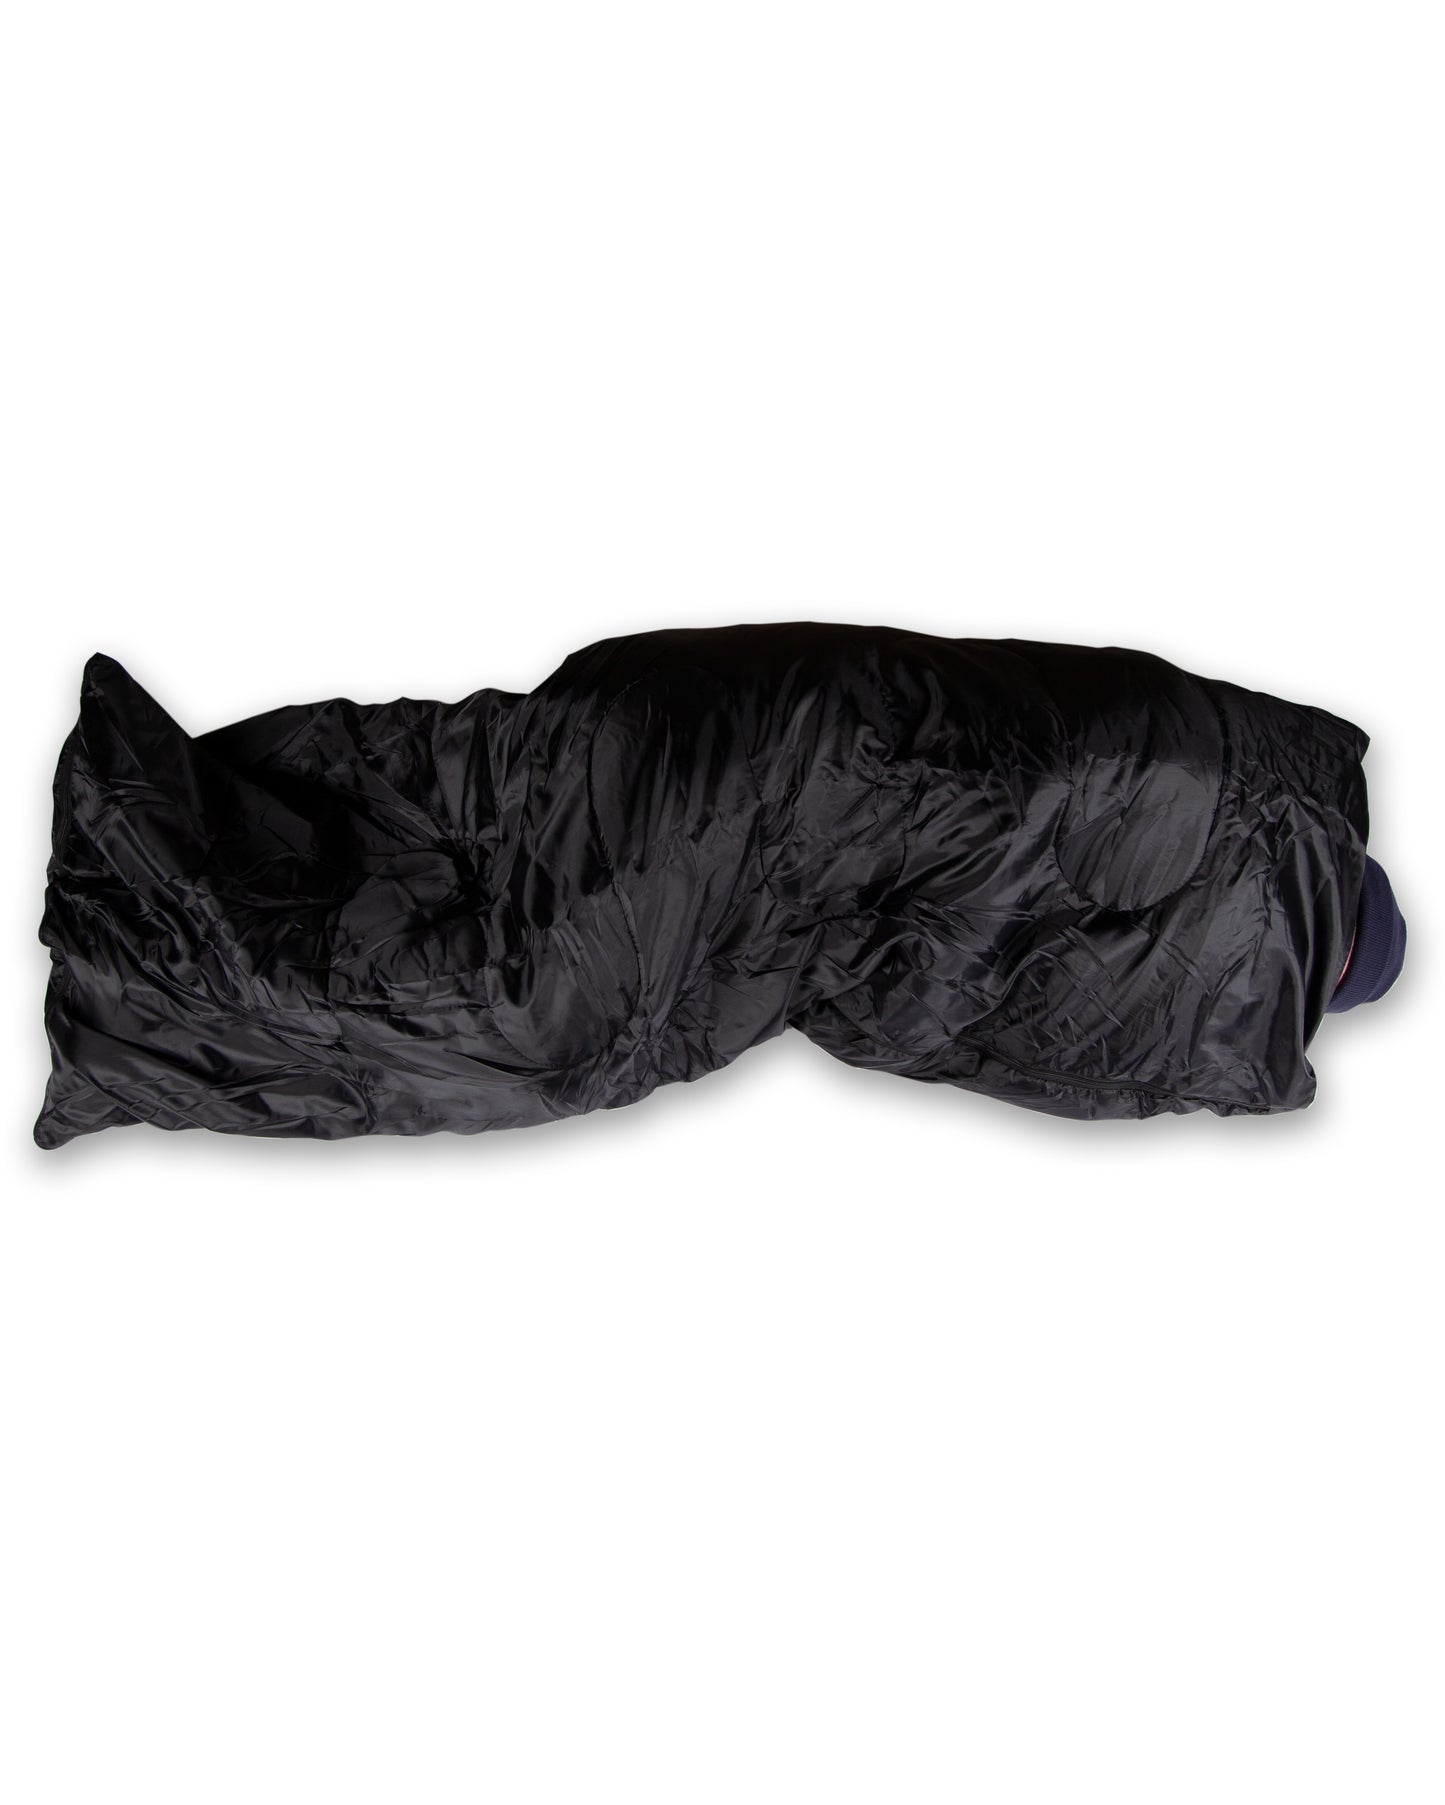 Sour - Sleeping Bag